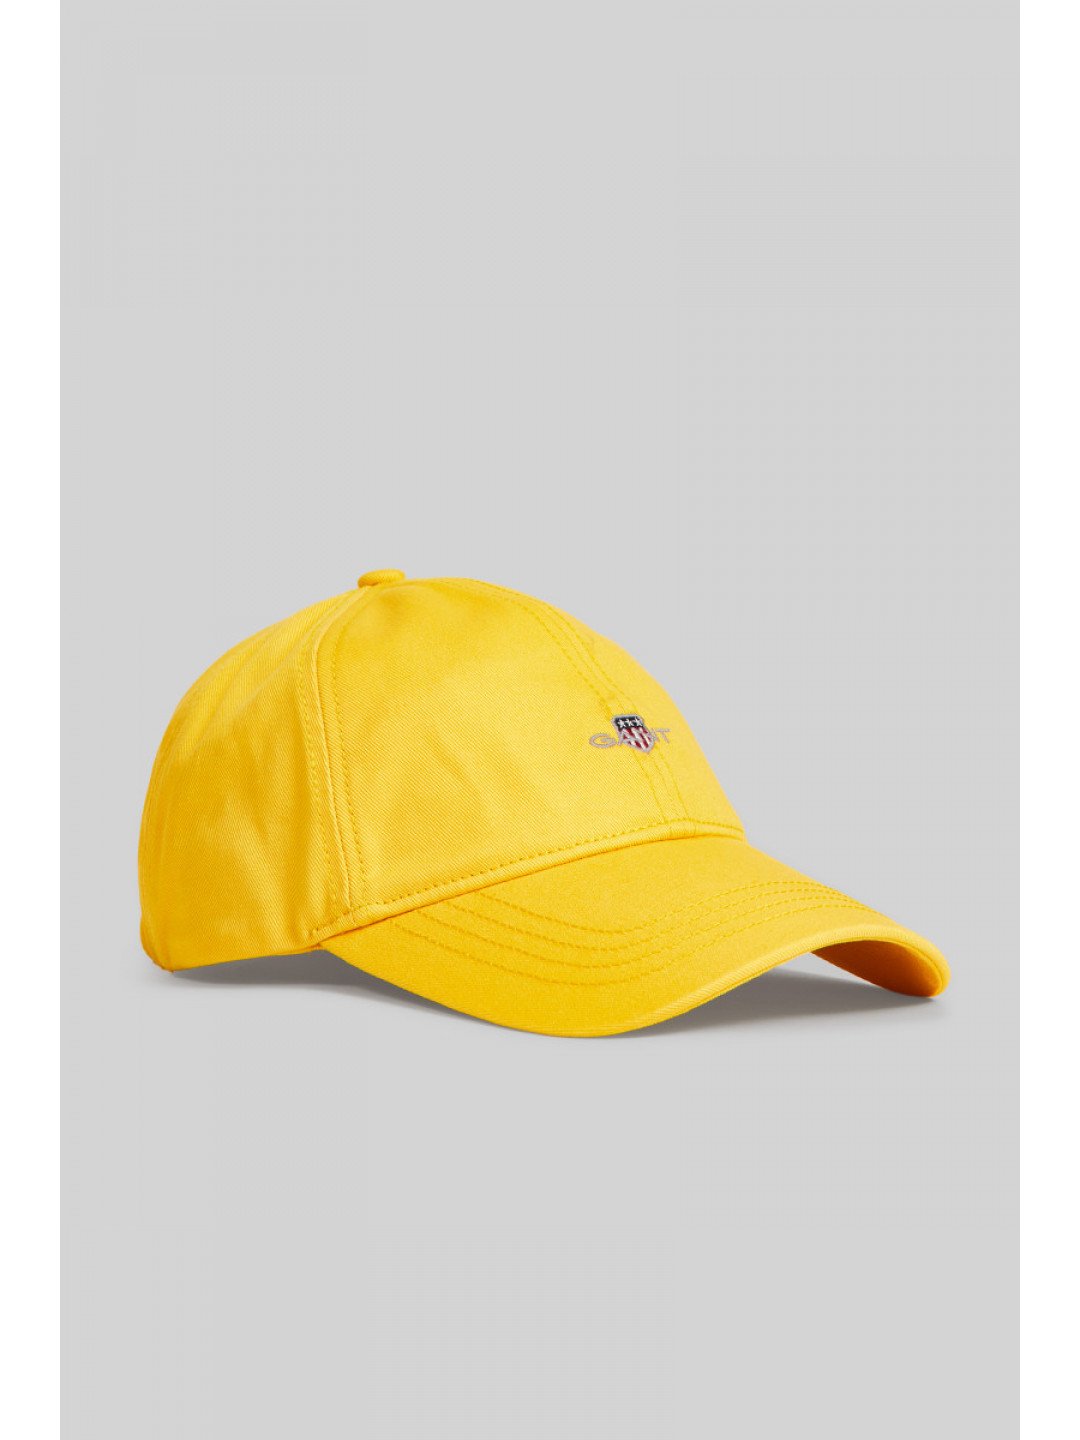 KŠILTOVKA GANT UNISEX SHIELD CAP žlutá L XL